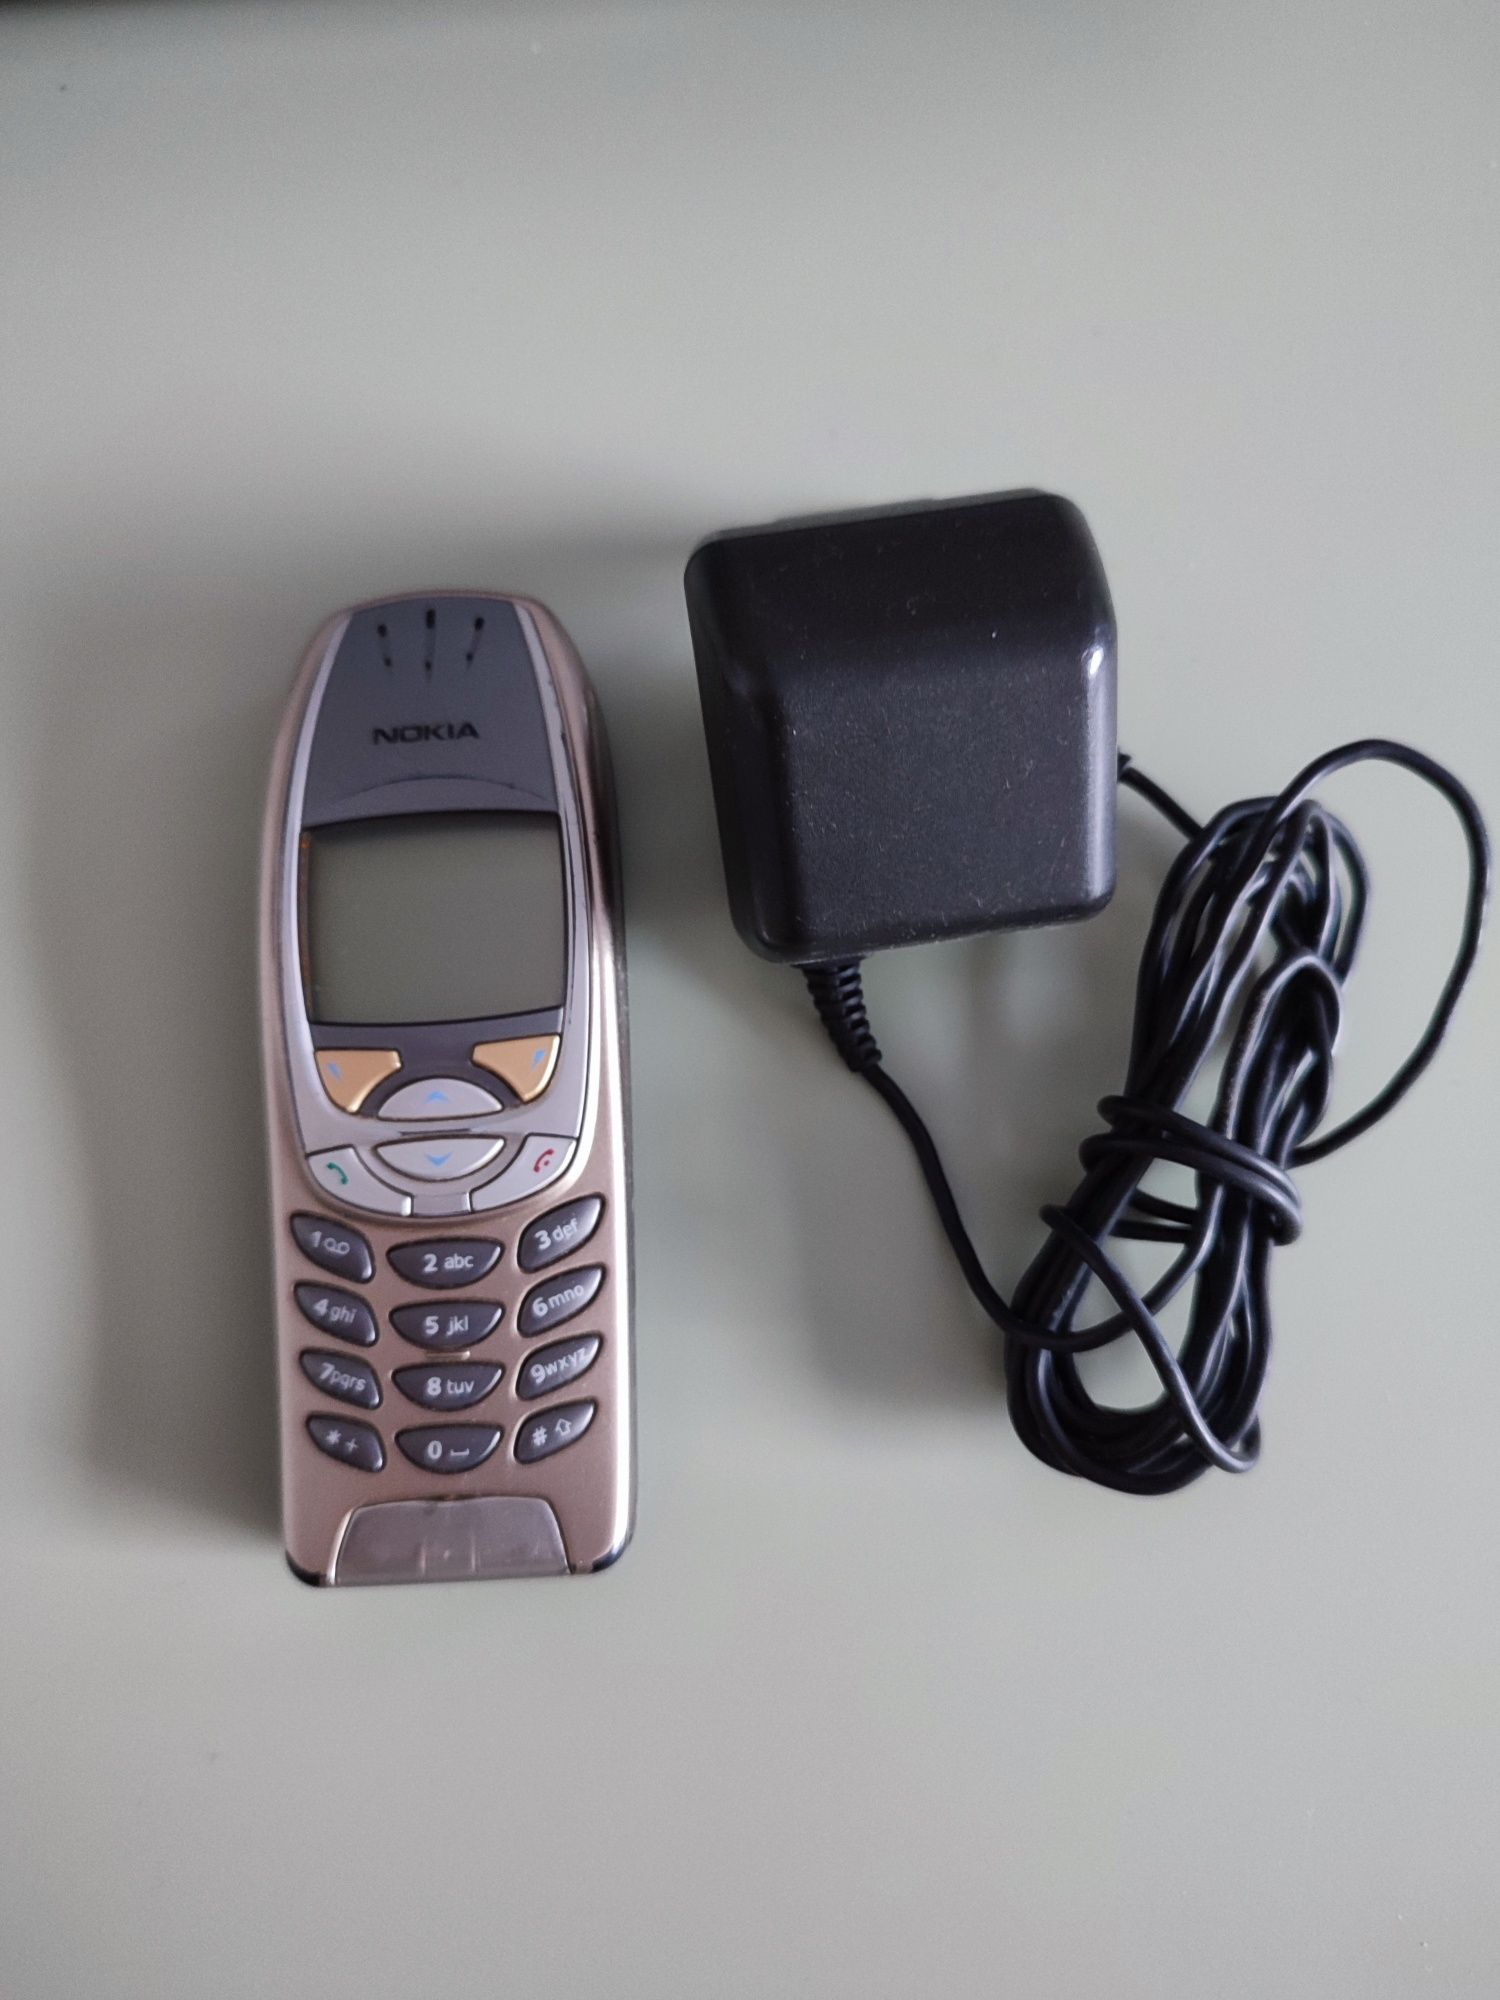 Sprawna Nokia 6310i z ładowarką